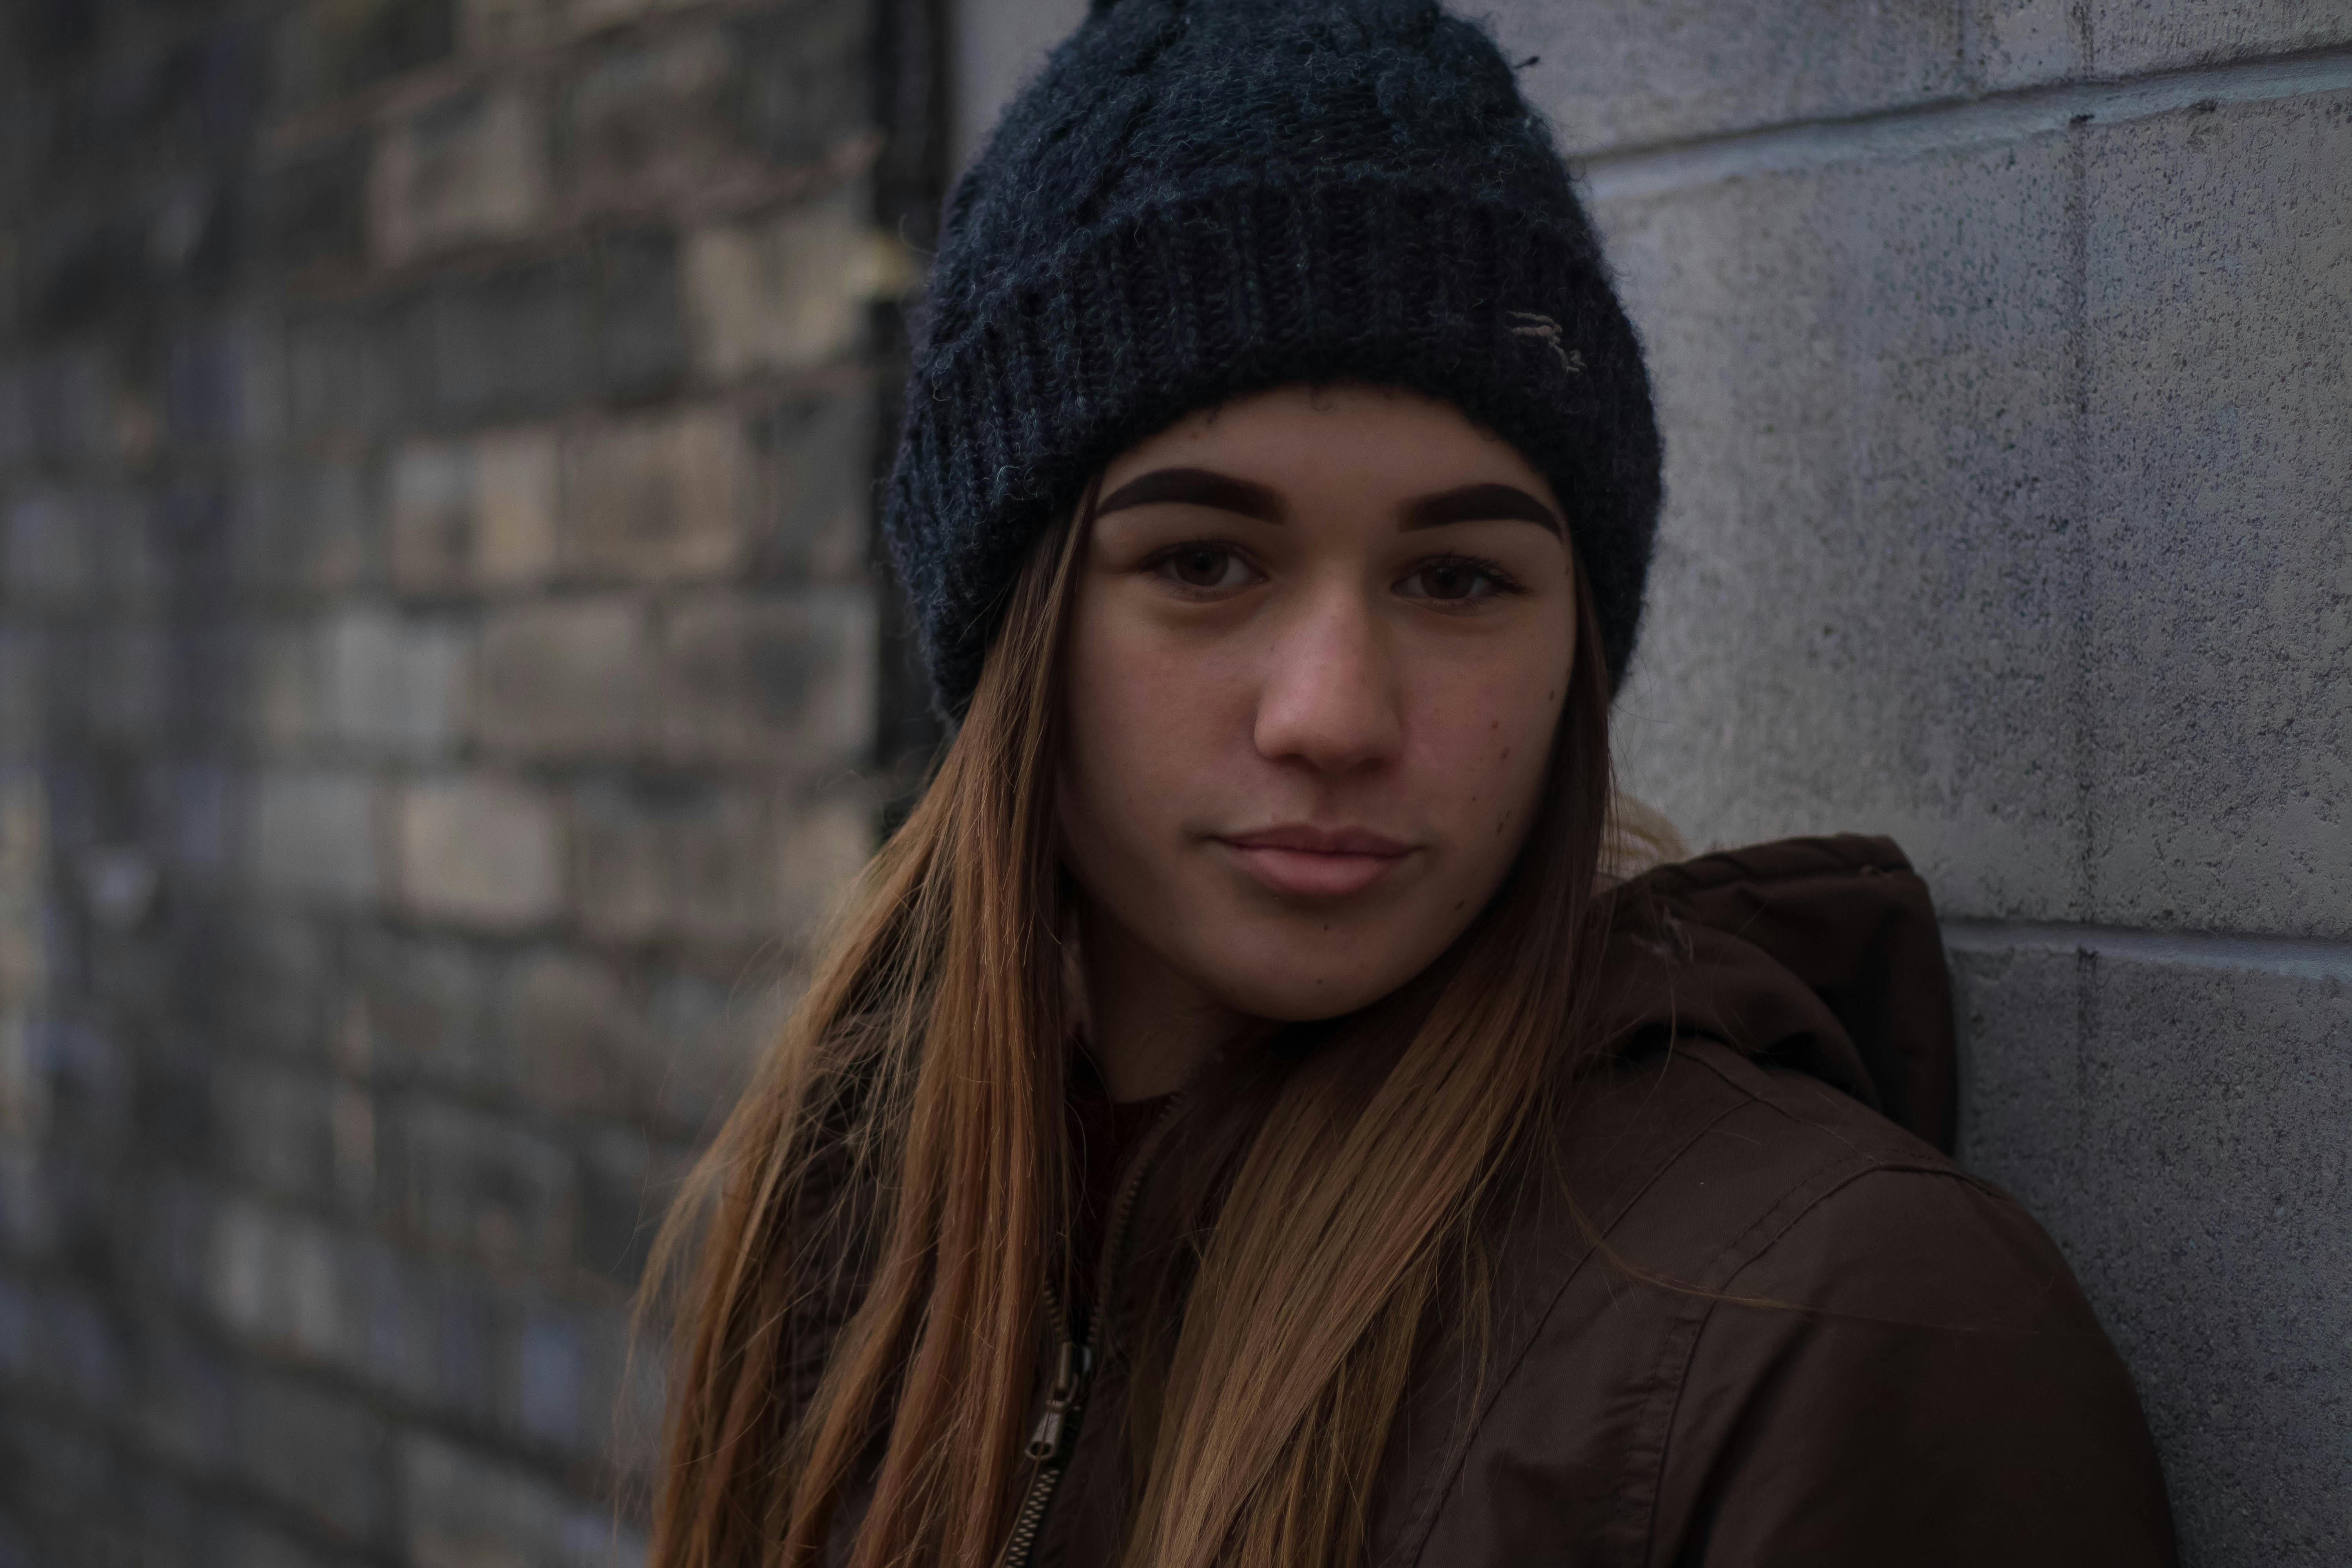 Une adolescente à l'allure neutre debout contre un mur | Source : Pexels